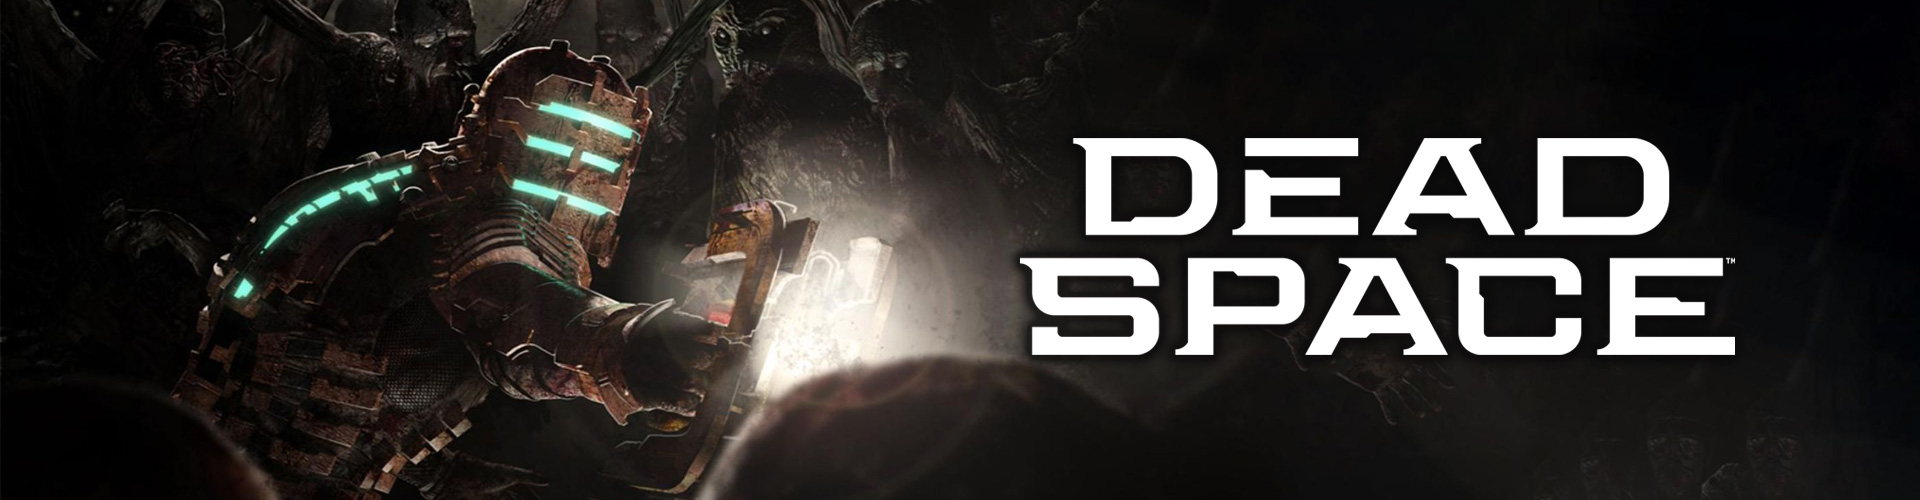 Dead Space est un jeu survival horror